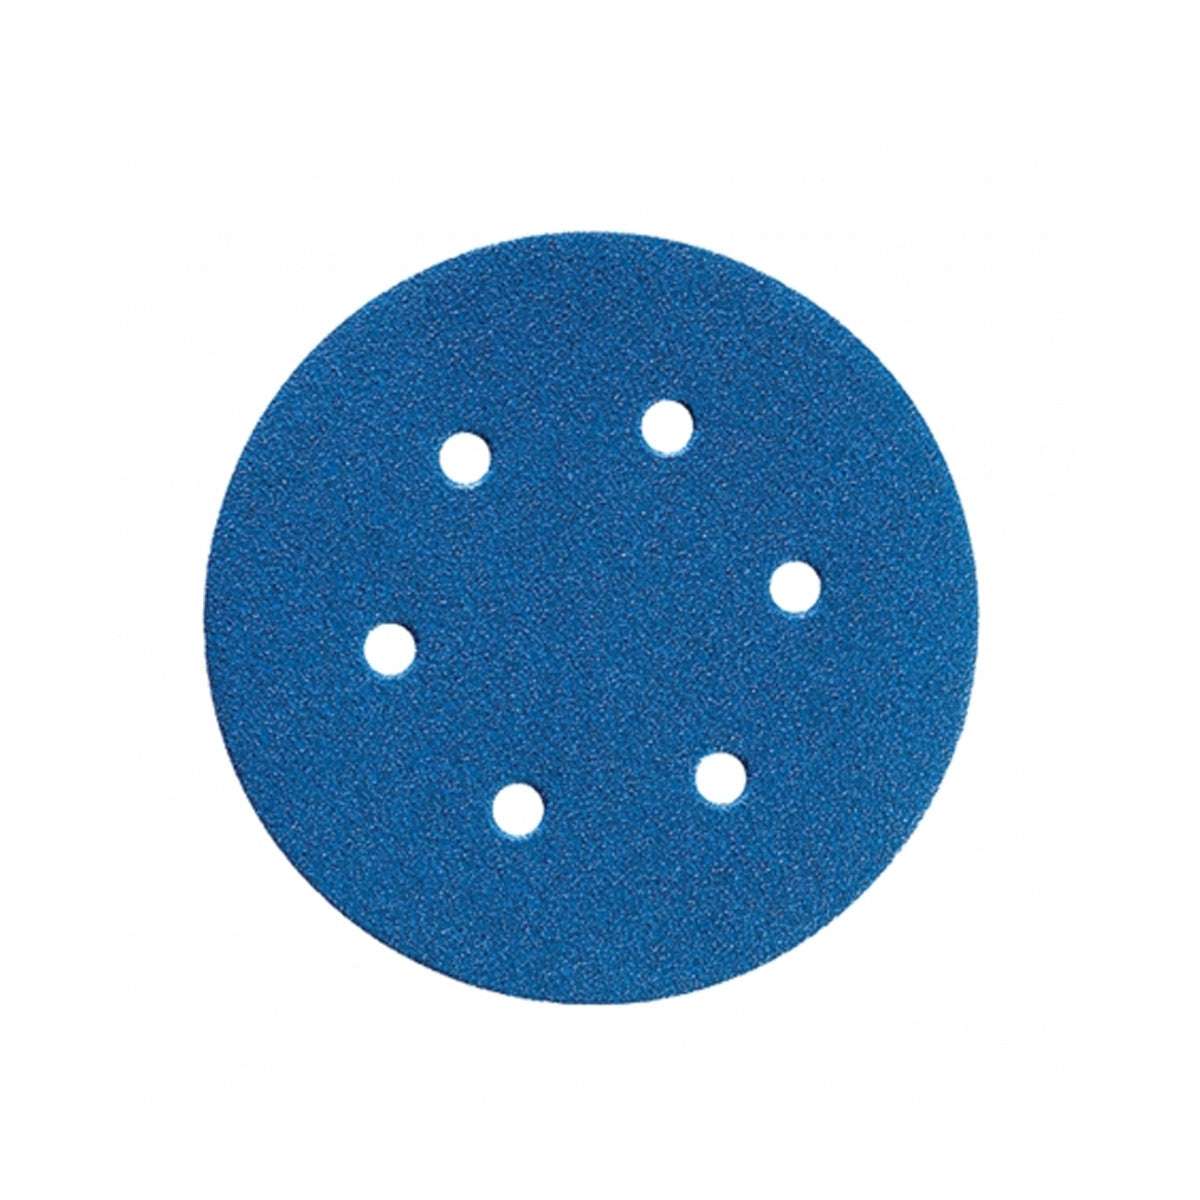 BLUE FIRE H835 150 velcro discs - Norton